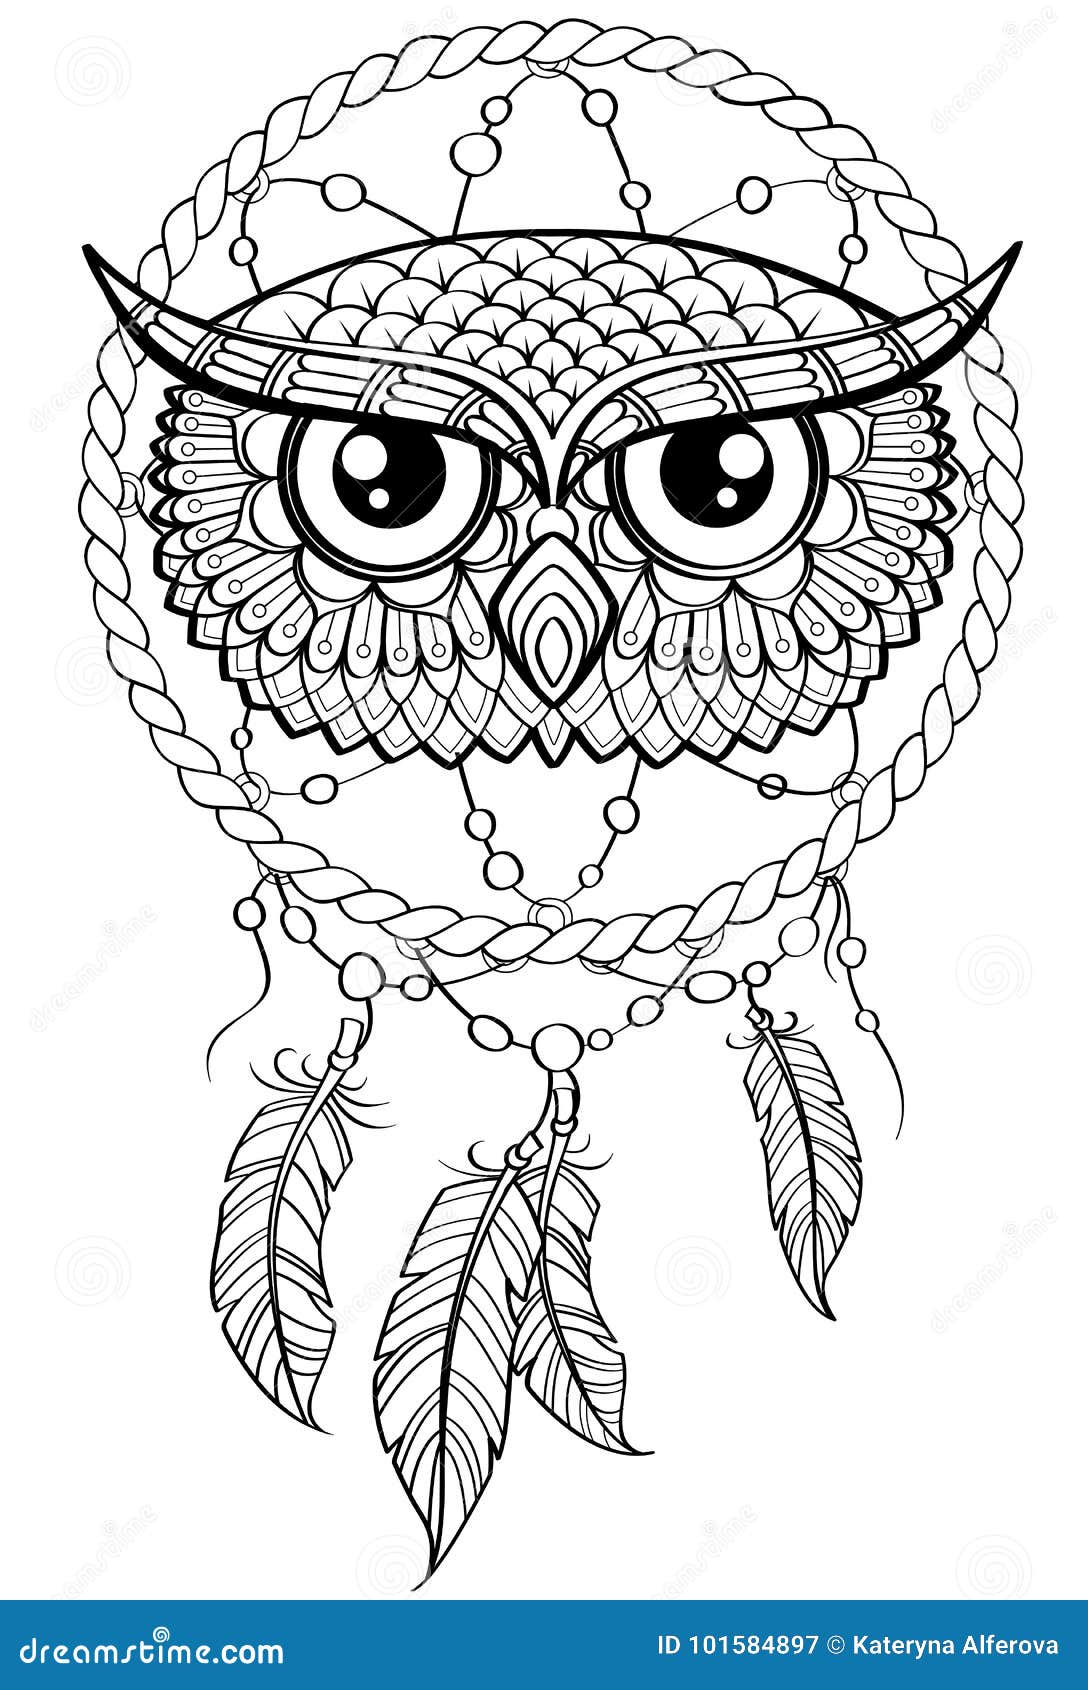 12 Best Owl Dreamcatcher Tattoo Designs  PetPress